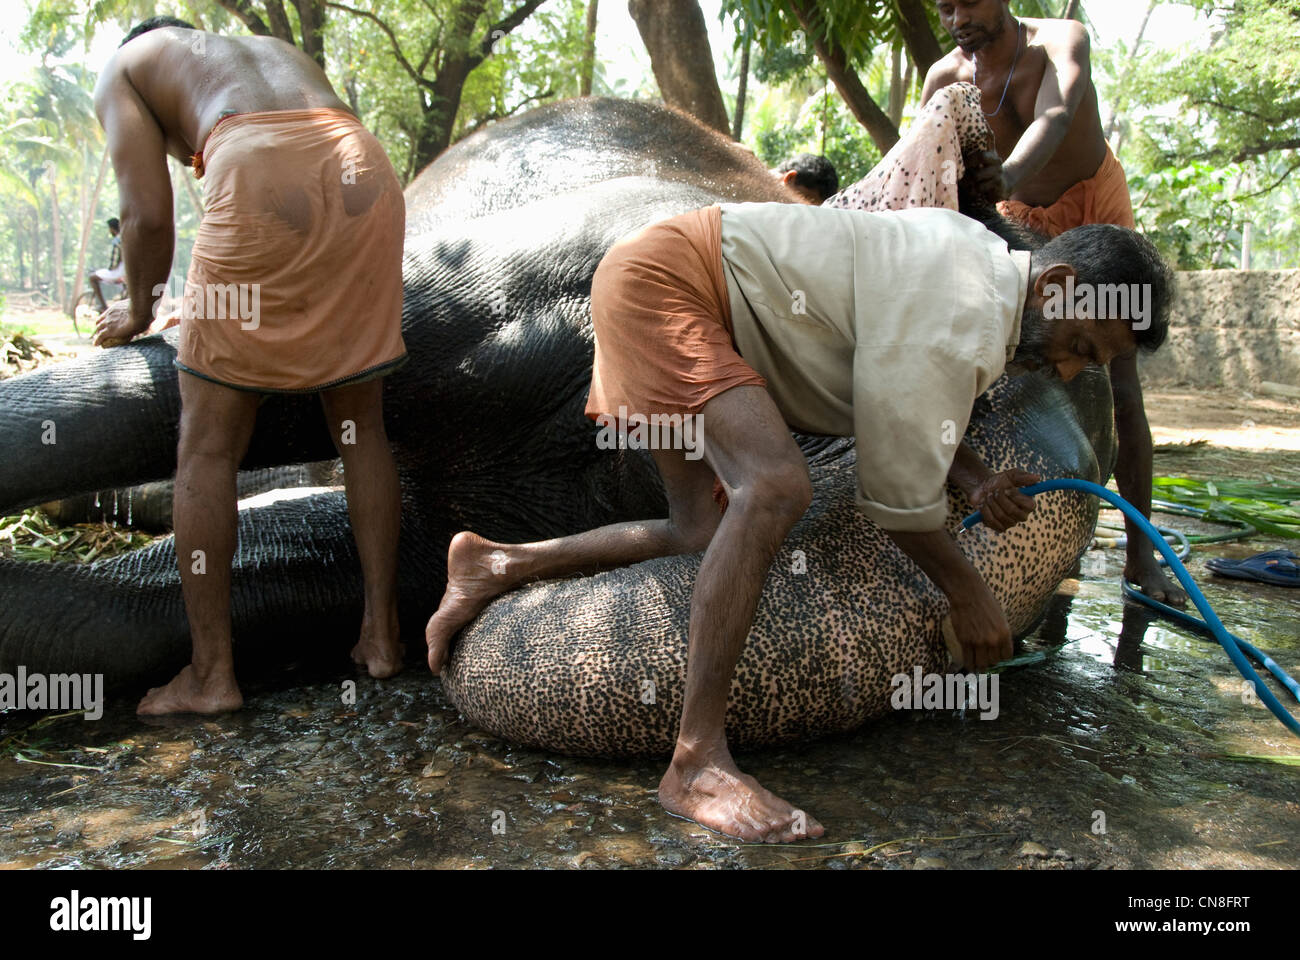 Men bathing/washing Elephant at Punnathur Kotta Elephant Sanctuary, Kerala, India Stock Photo